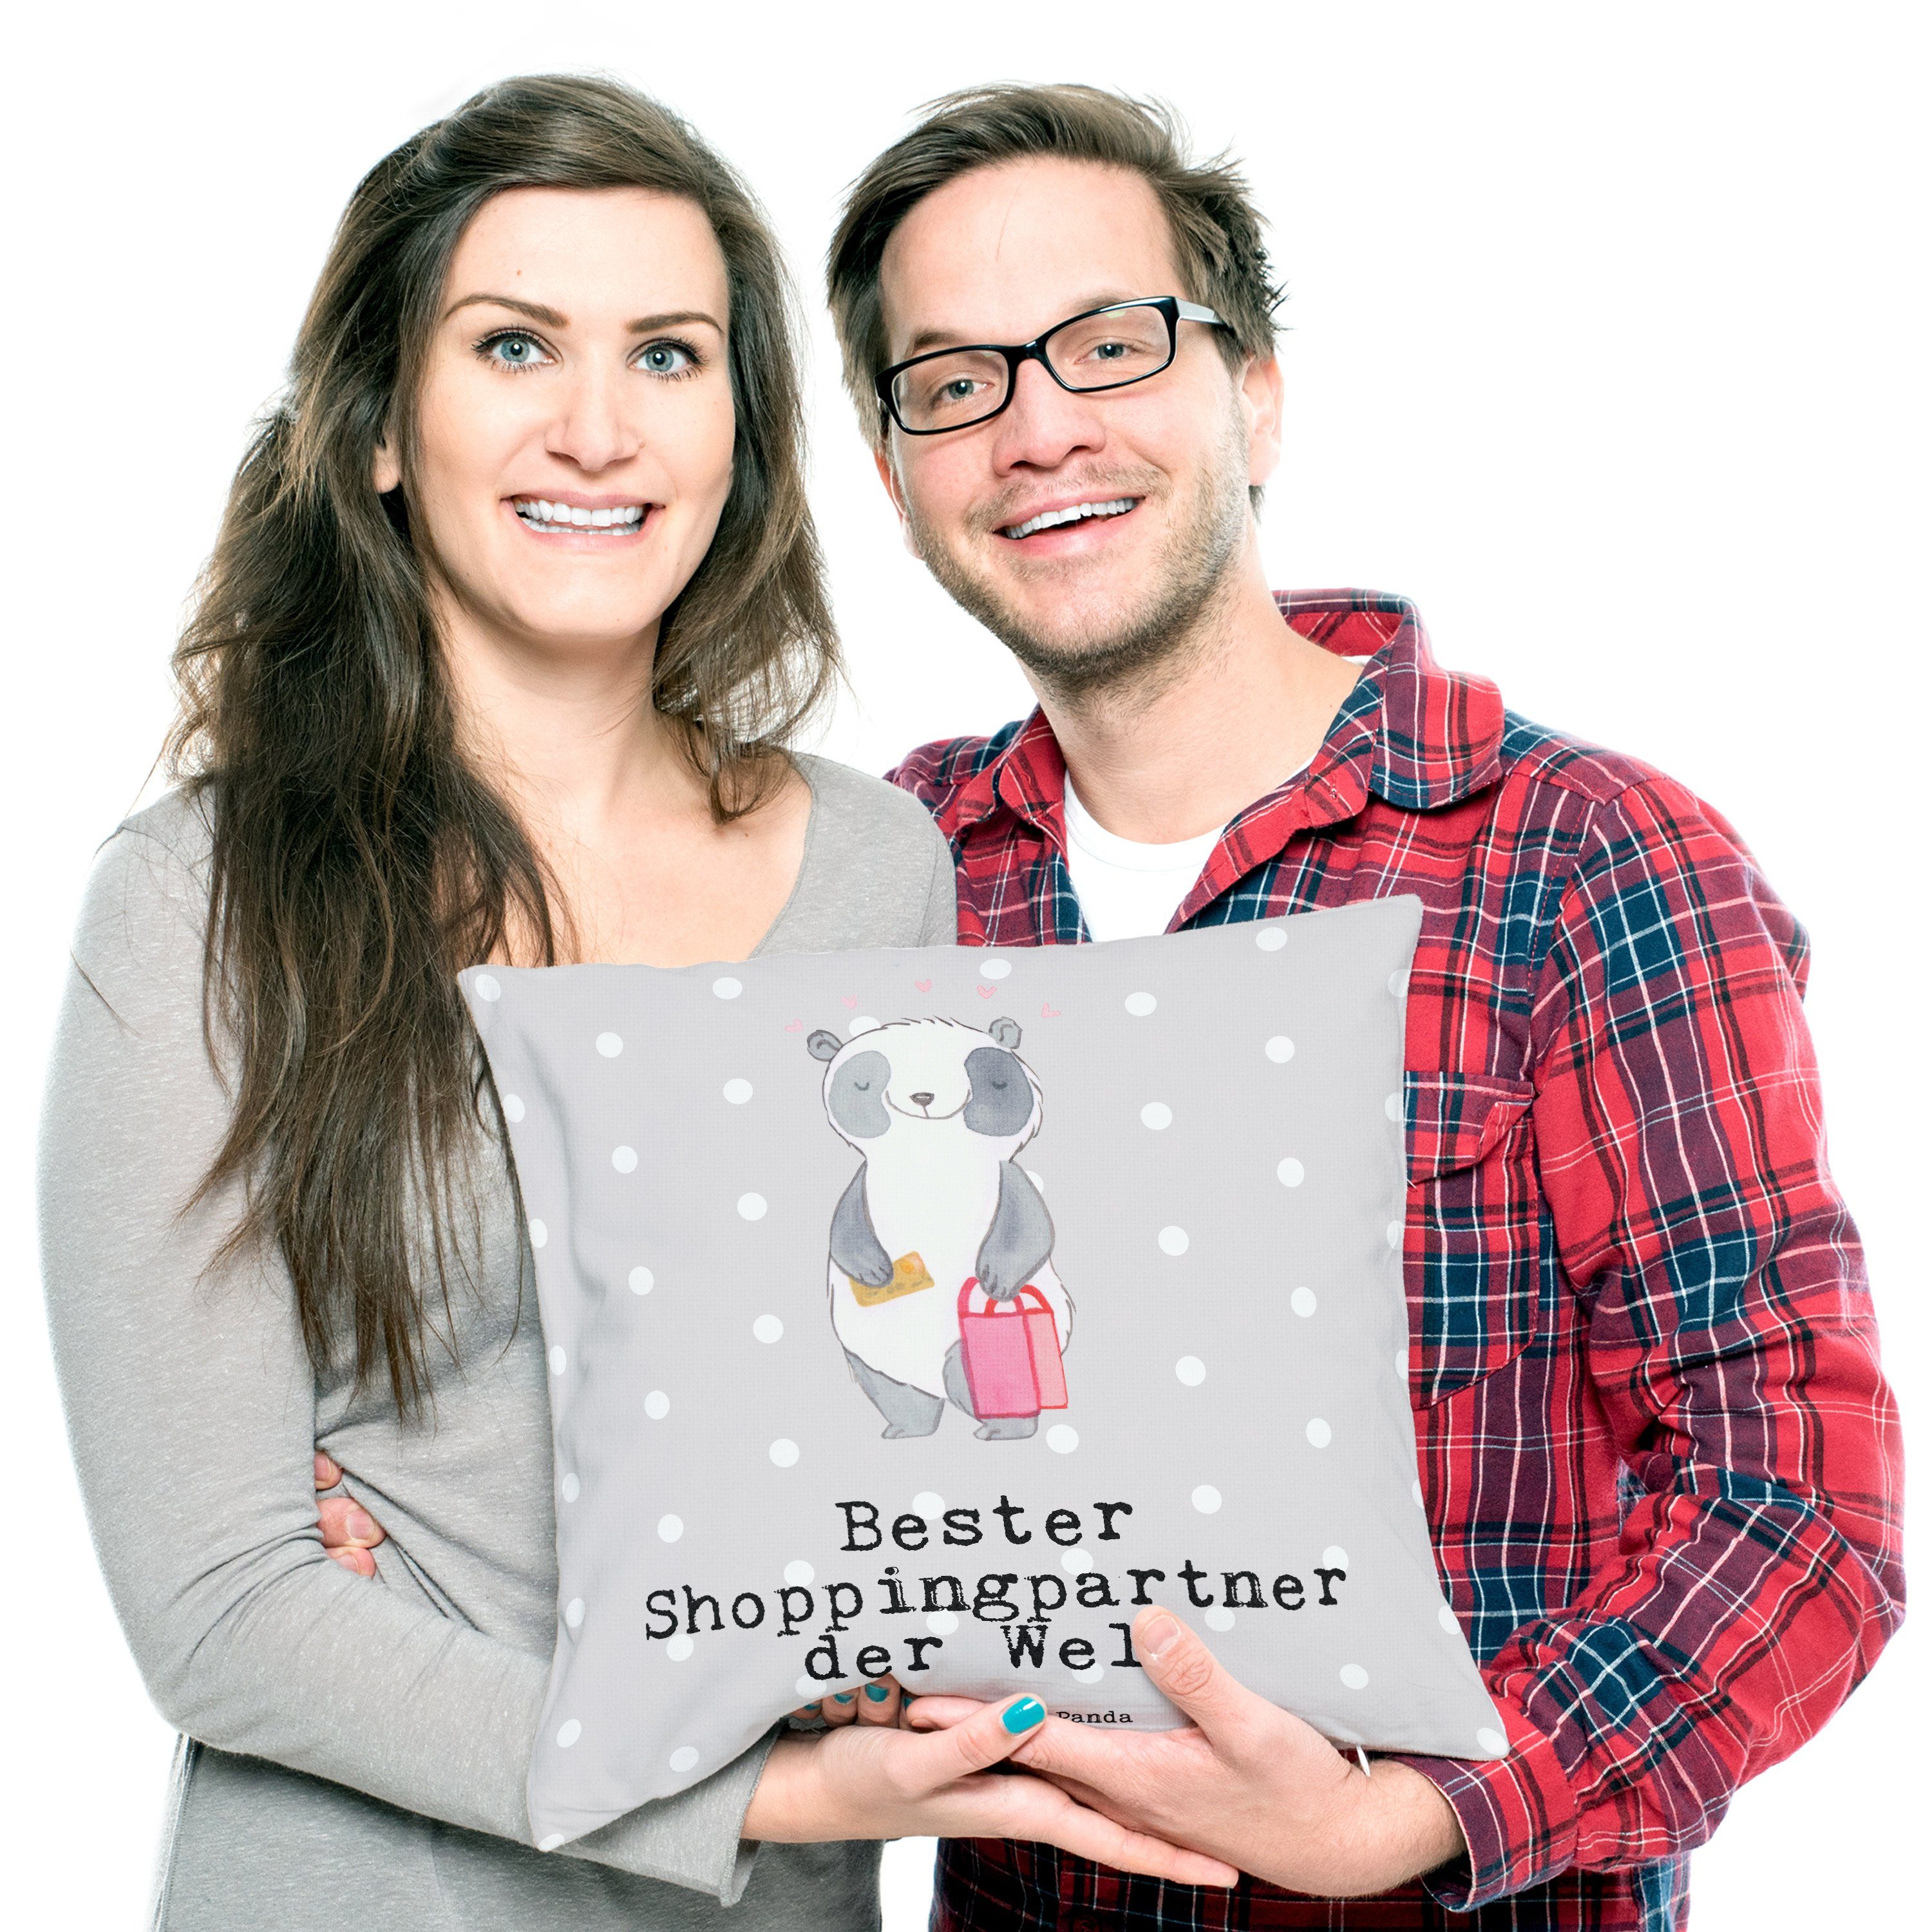 Mr. & Welt Mrs. - Pastell Panda Dekokissen Panda - Grau Shoppingpartner Bester der Shop Geschenk